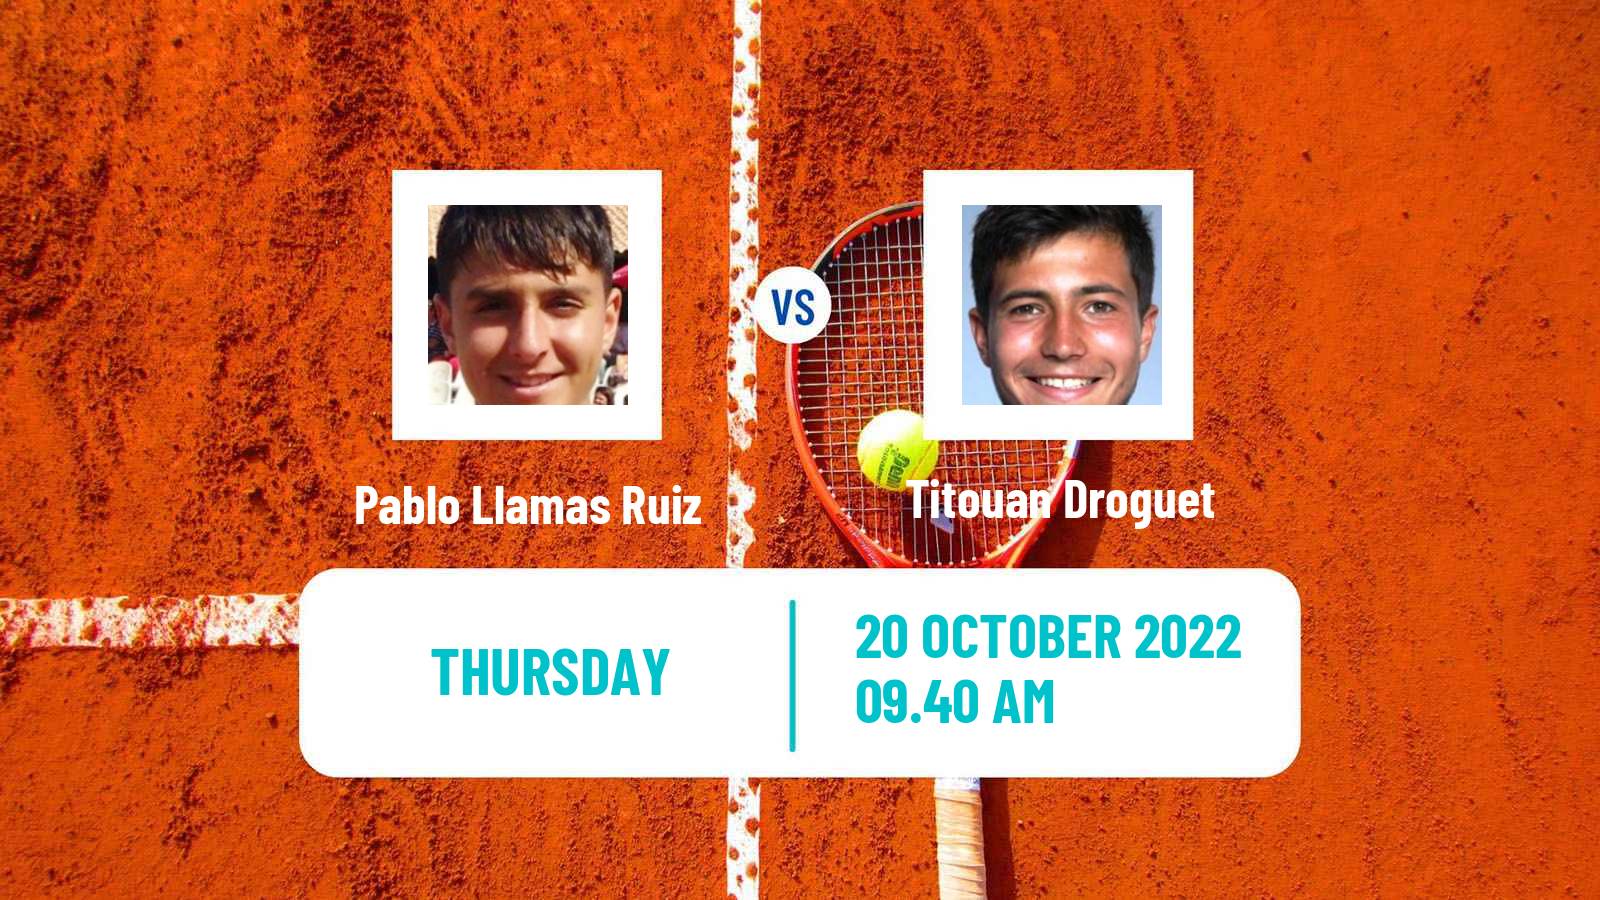 Tennis ITF Tournaments Pablo Llamas Ruiz - Titouan Droguet